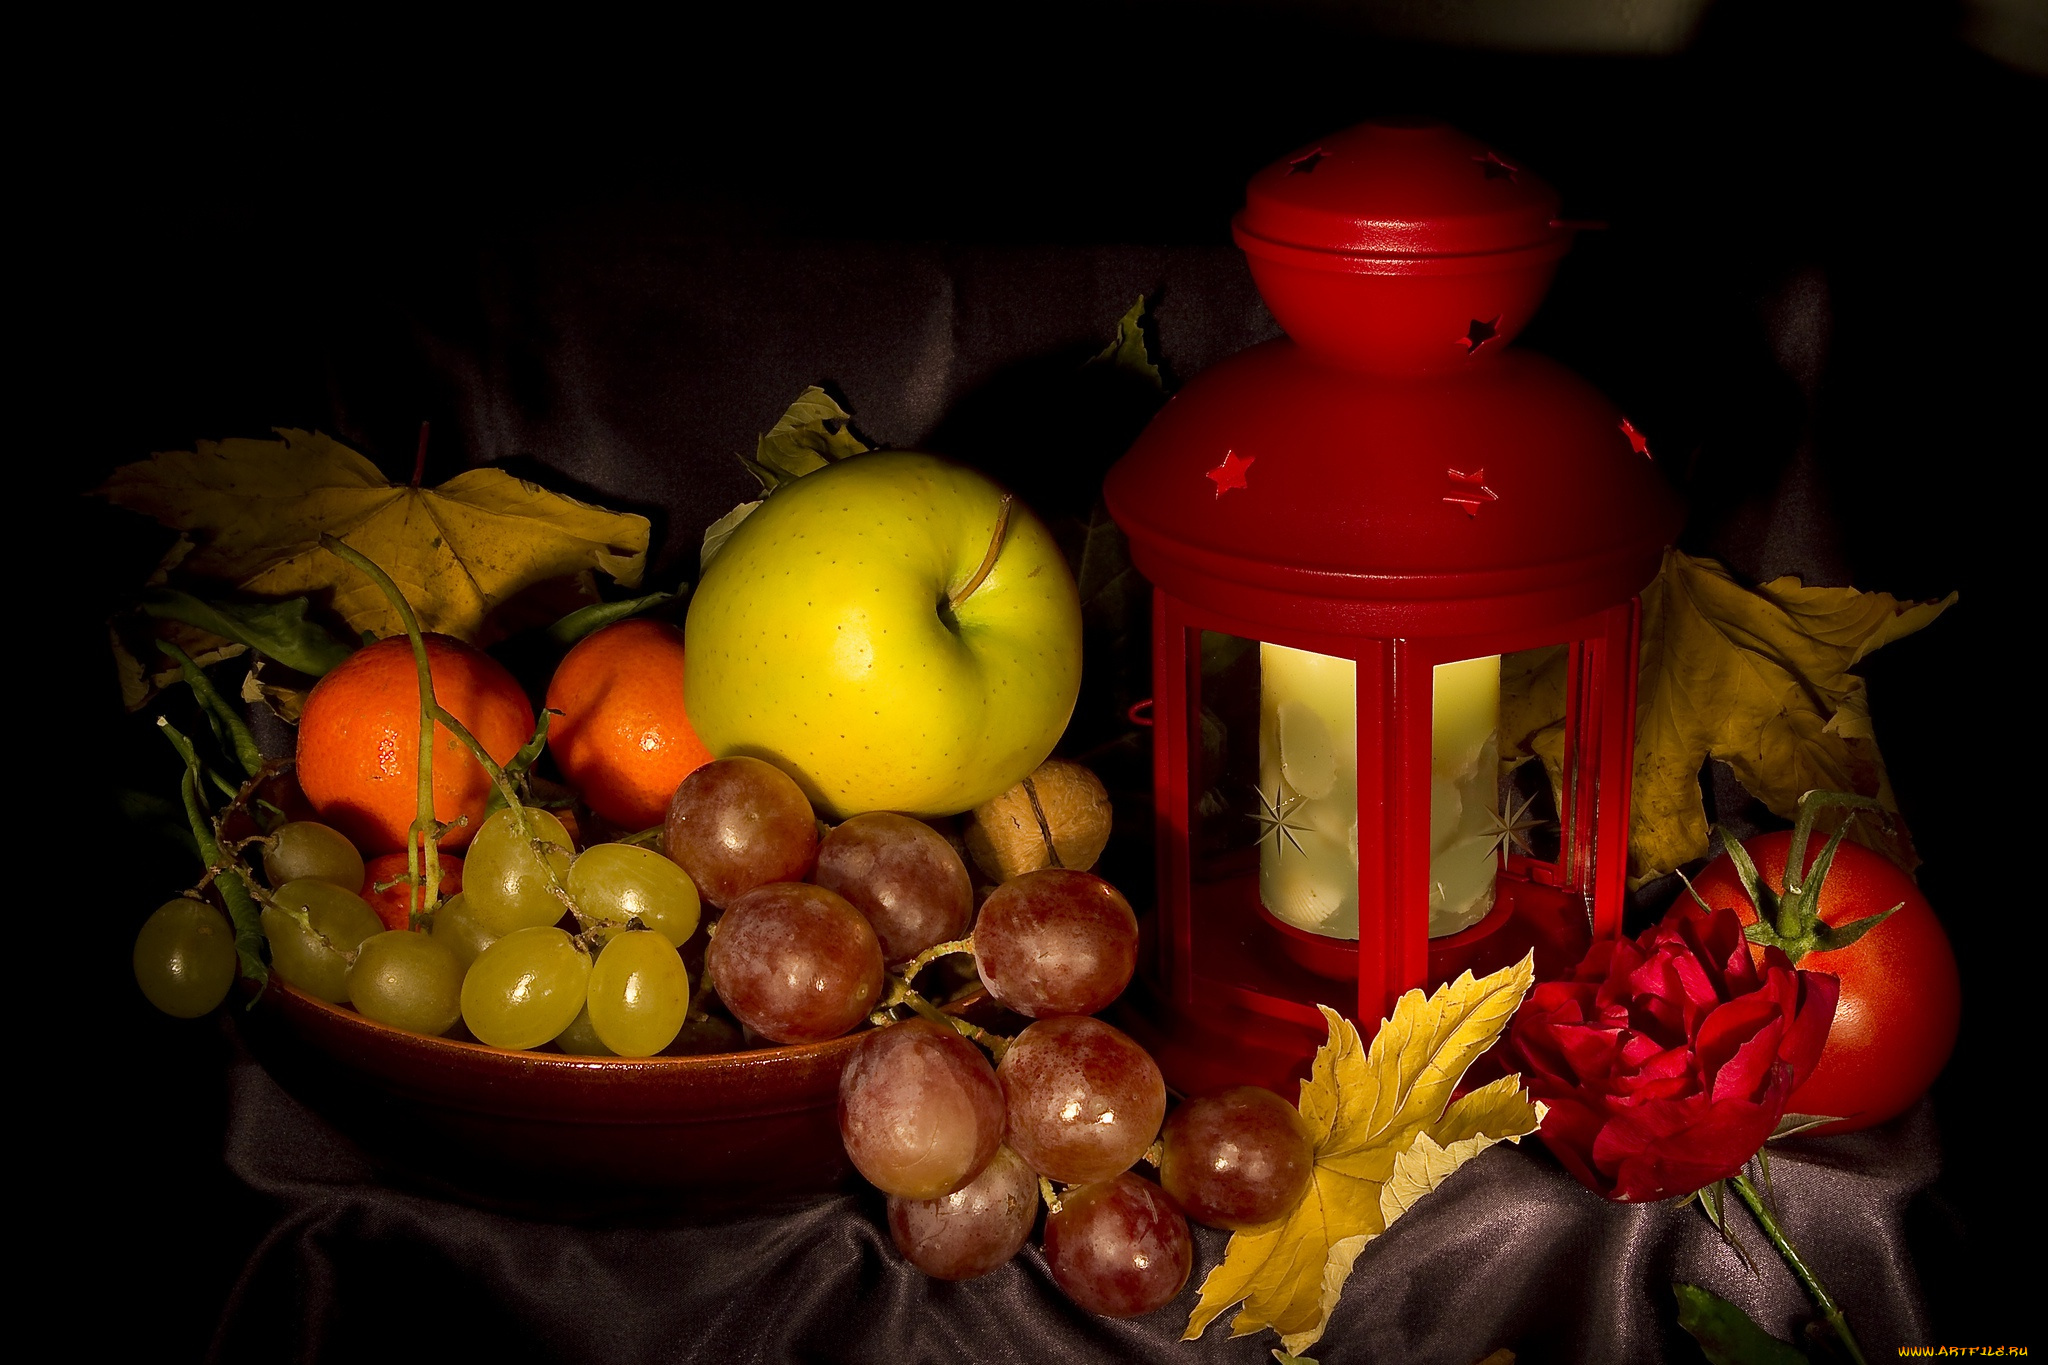 еда, натюрморт, виноград, яблоко, осень, листья, фонарь, натюрмотр, мандарины, томаты, помидоры